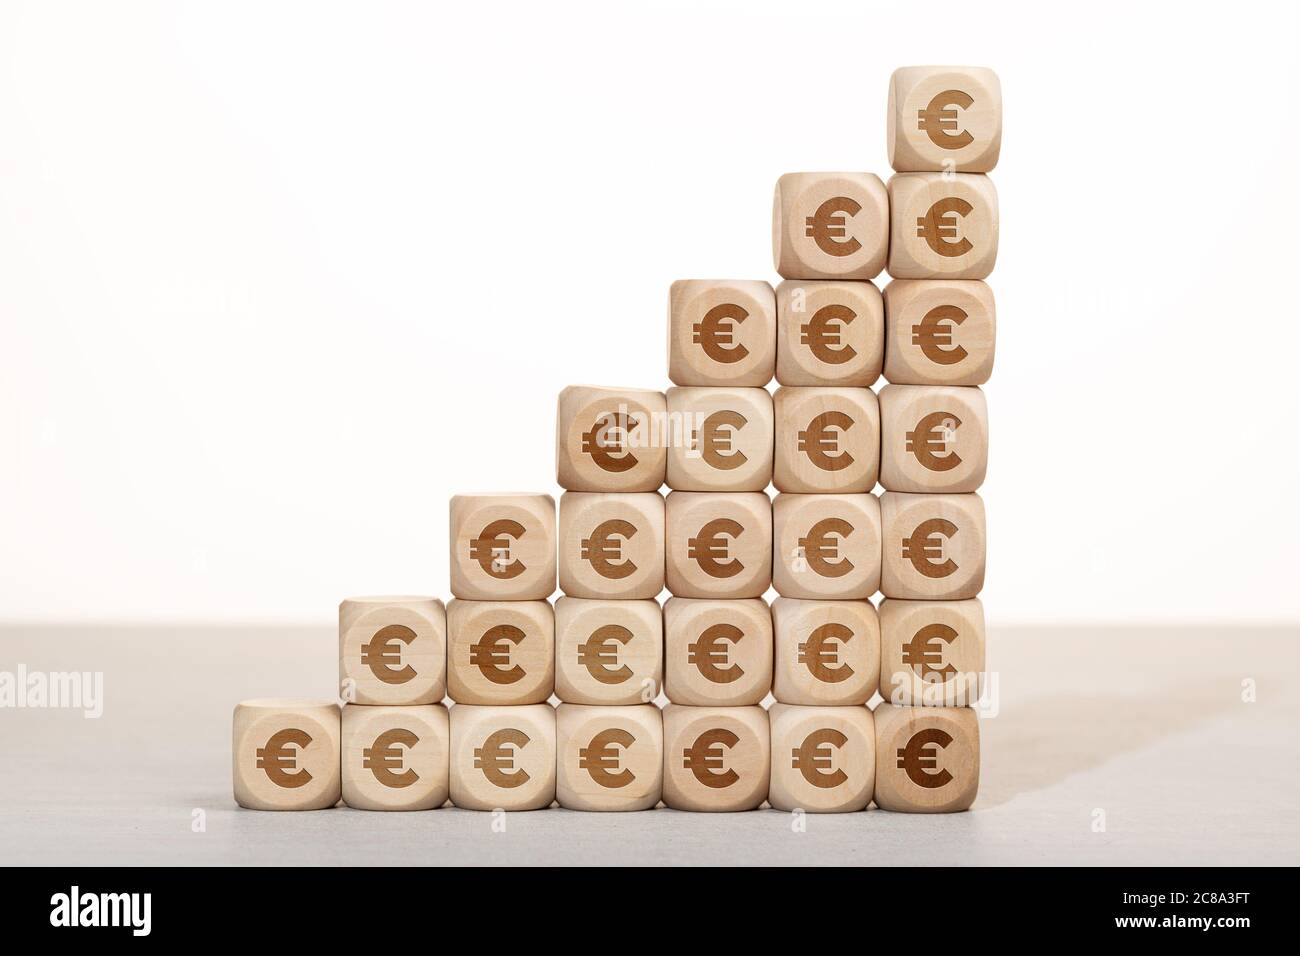 Concept de croissance, de richesse ou de richesse. Groupe de blocs de bois empilés avec le symbole euro Banque D'Images